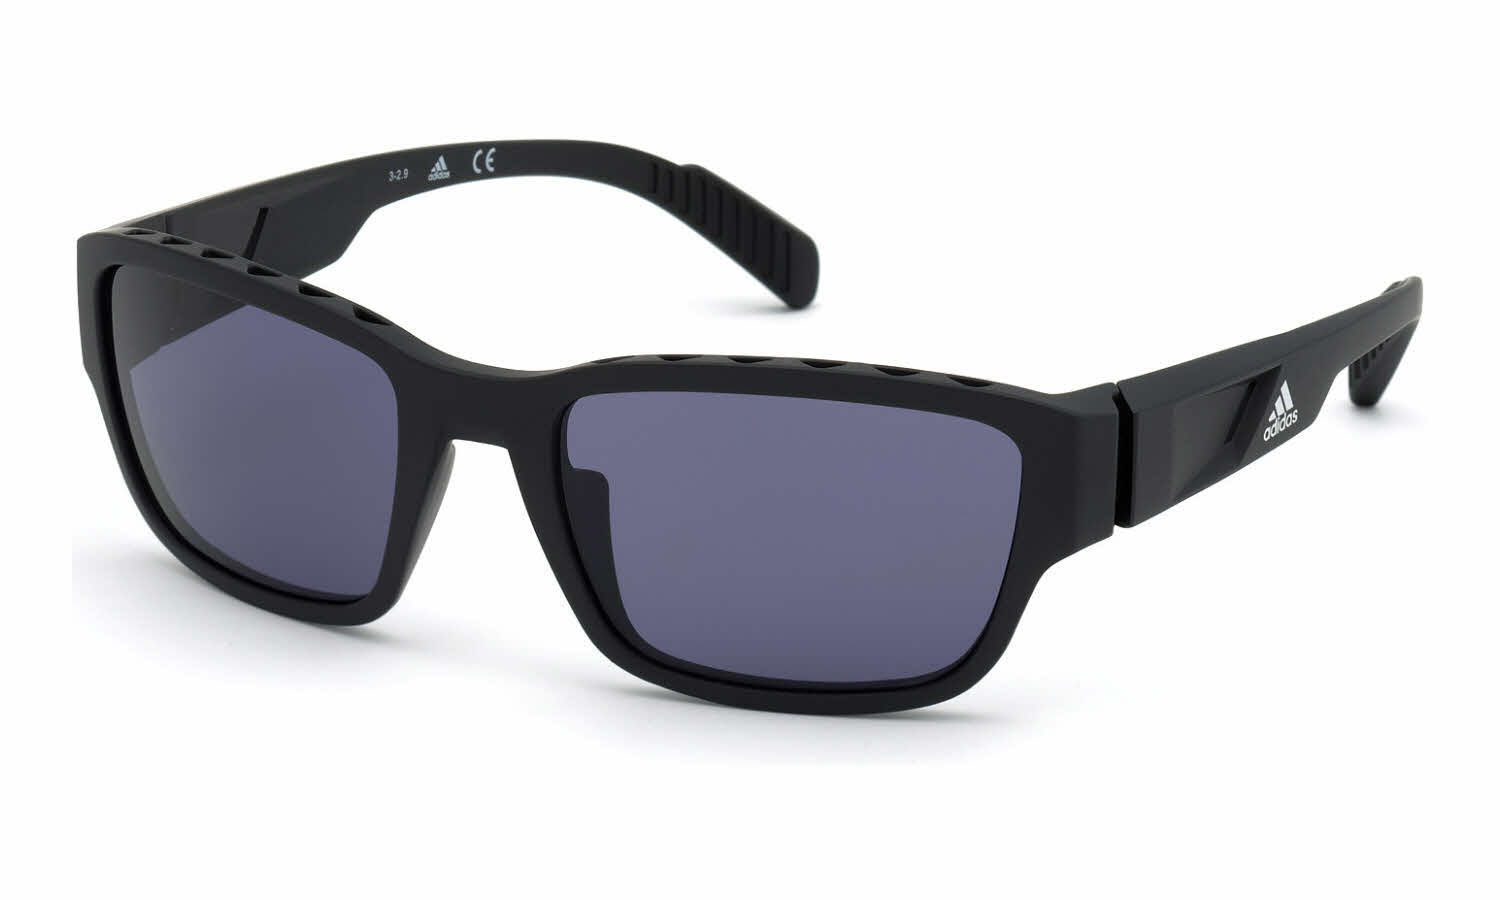 Adidas SP0007 Men's Sunglasses In Black